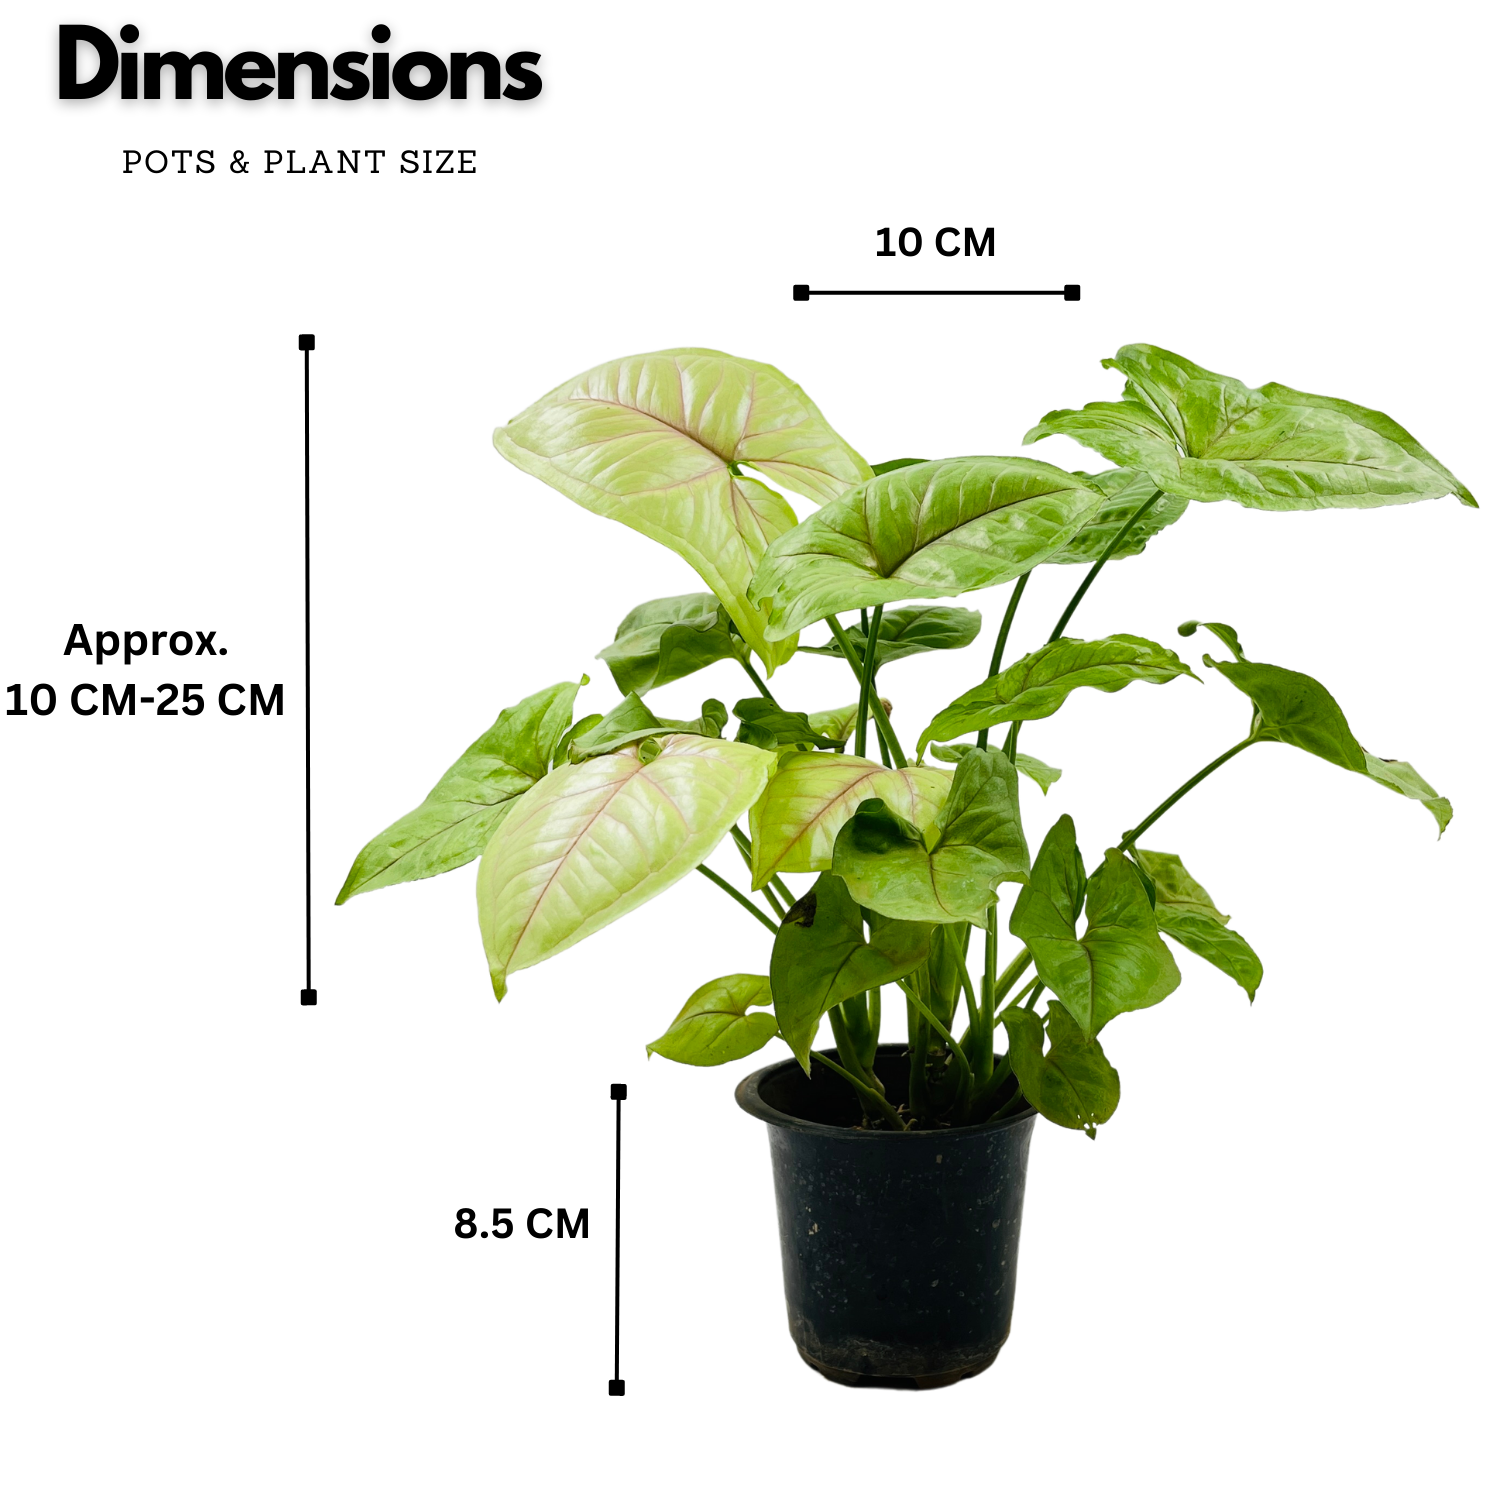 Syngonium Lemon (Syngonium Podophyllum) - Live Plant (Home & Graden)